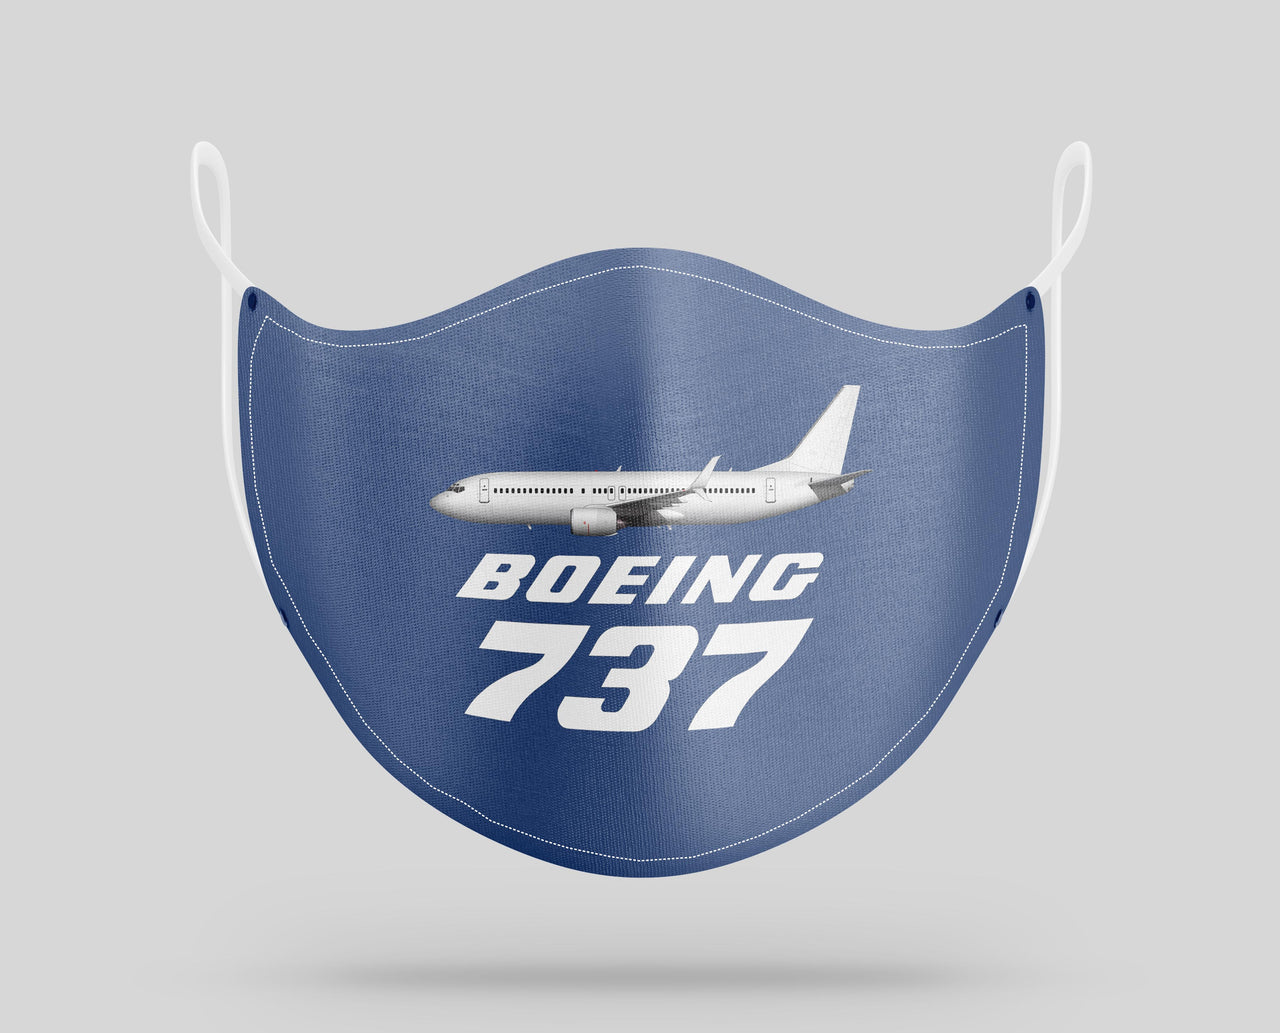 The Boeing 737 Designed Face Masks